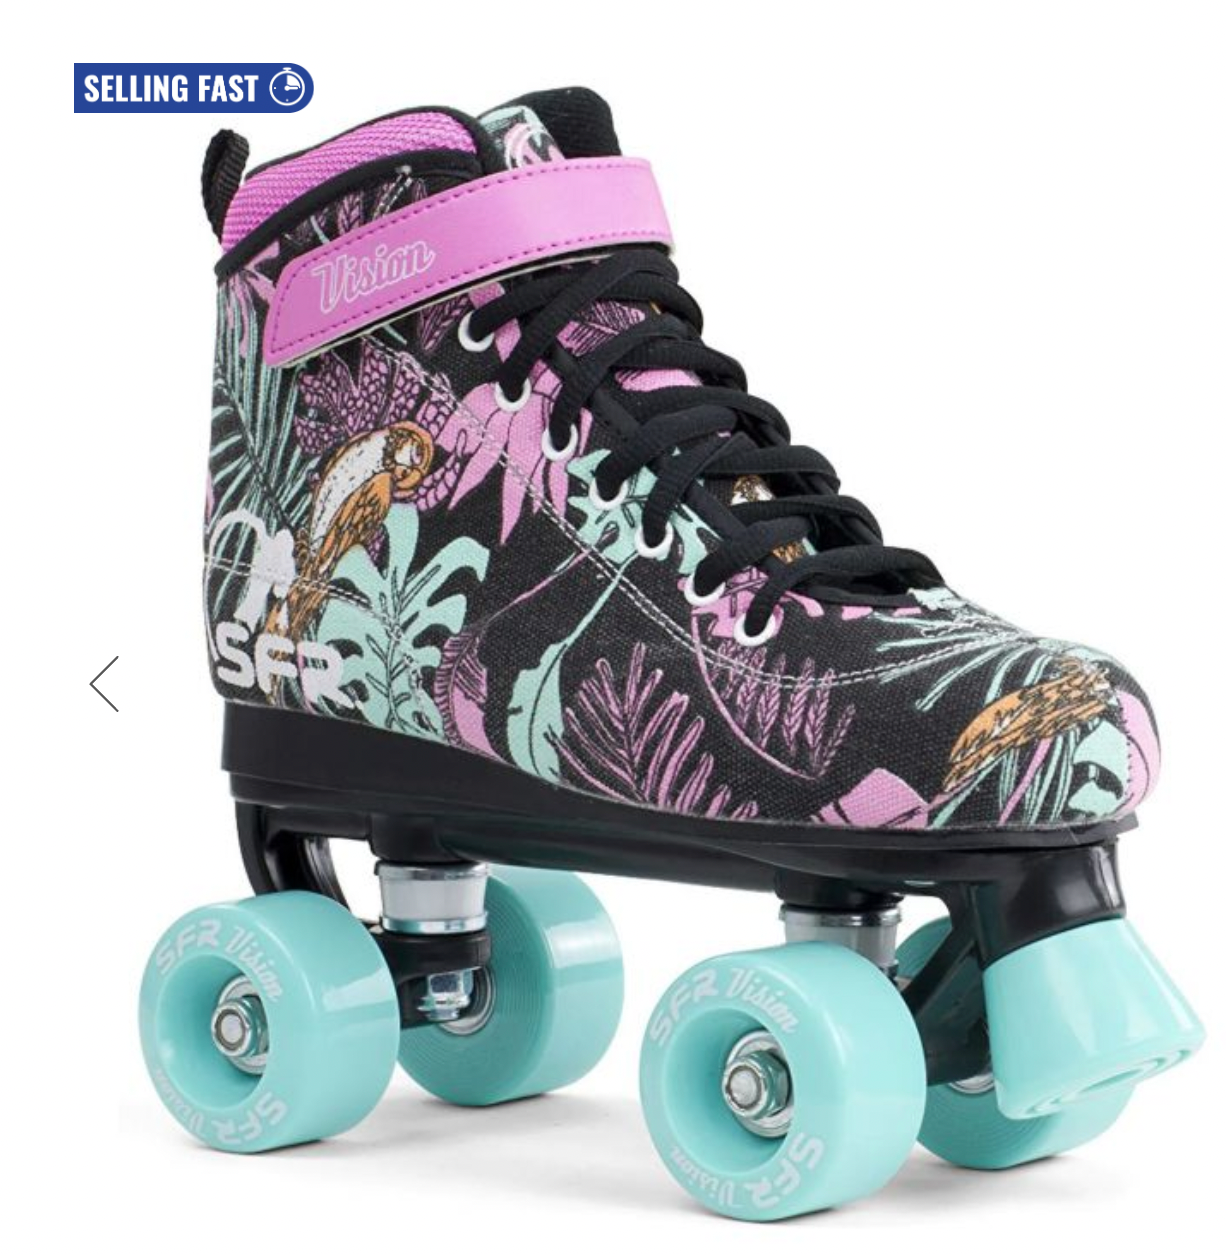 SFR Vision Canvas Quad Roller Skates - Floral